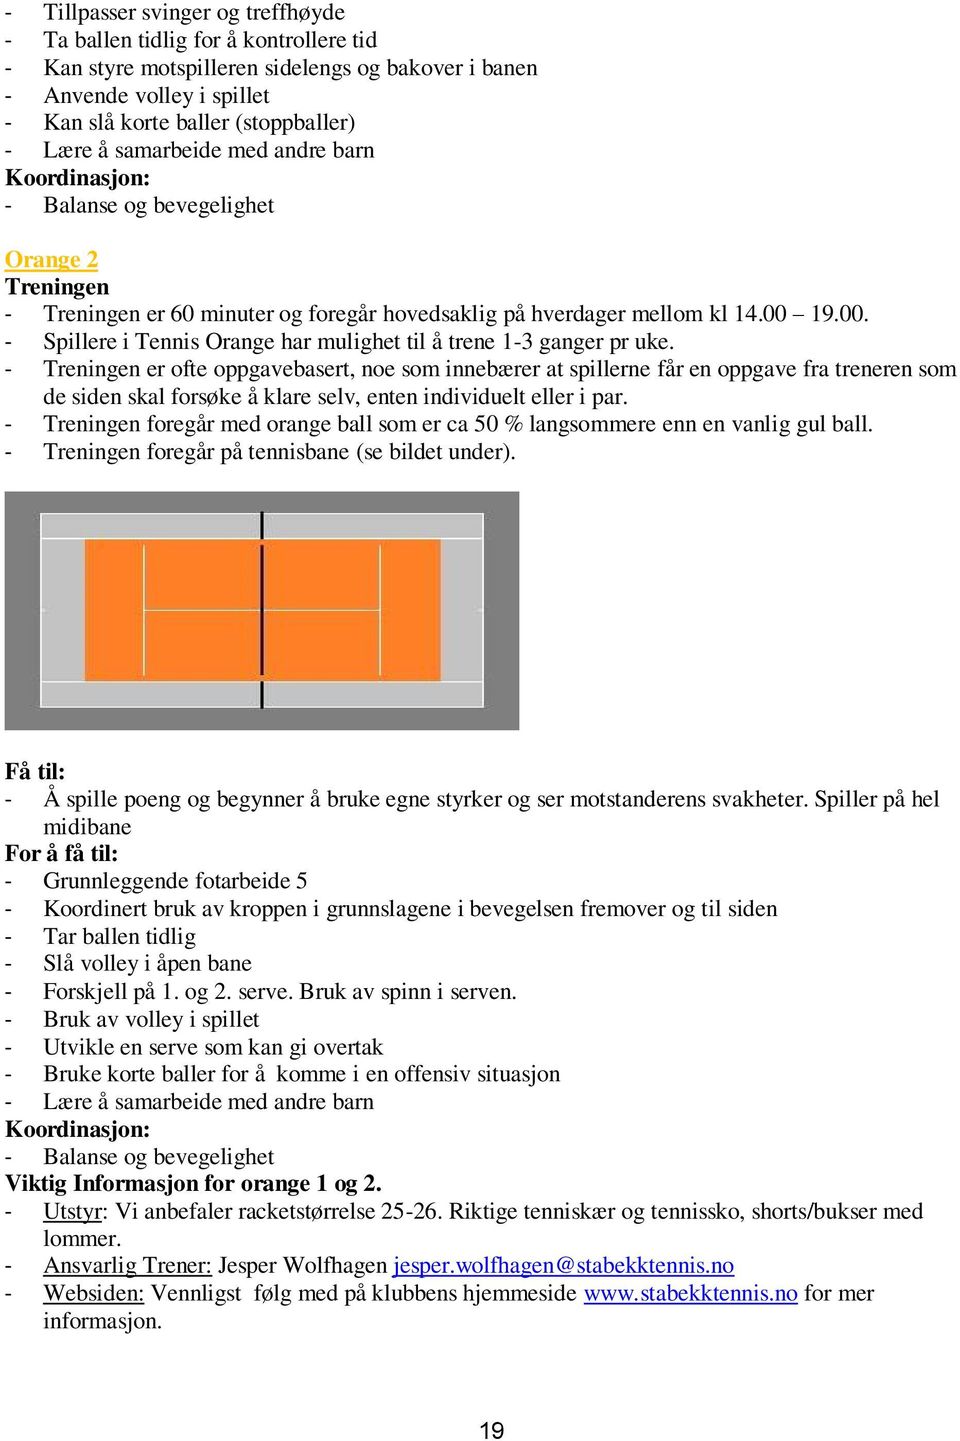 19.00. - Spillere i Tennis Orange har mulighet til å trene 1-3 ganger pr uke.